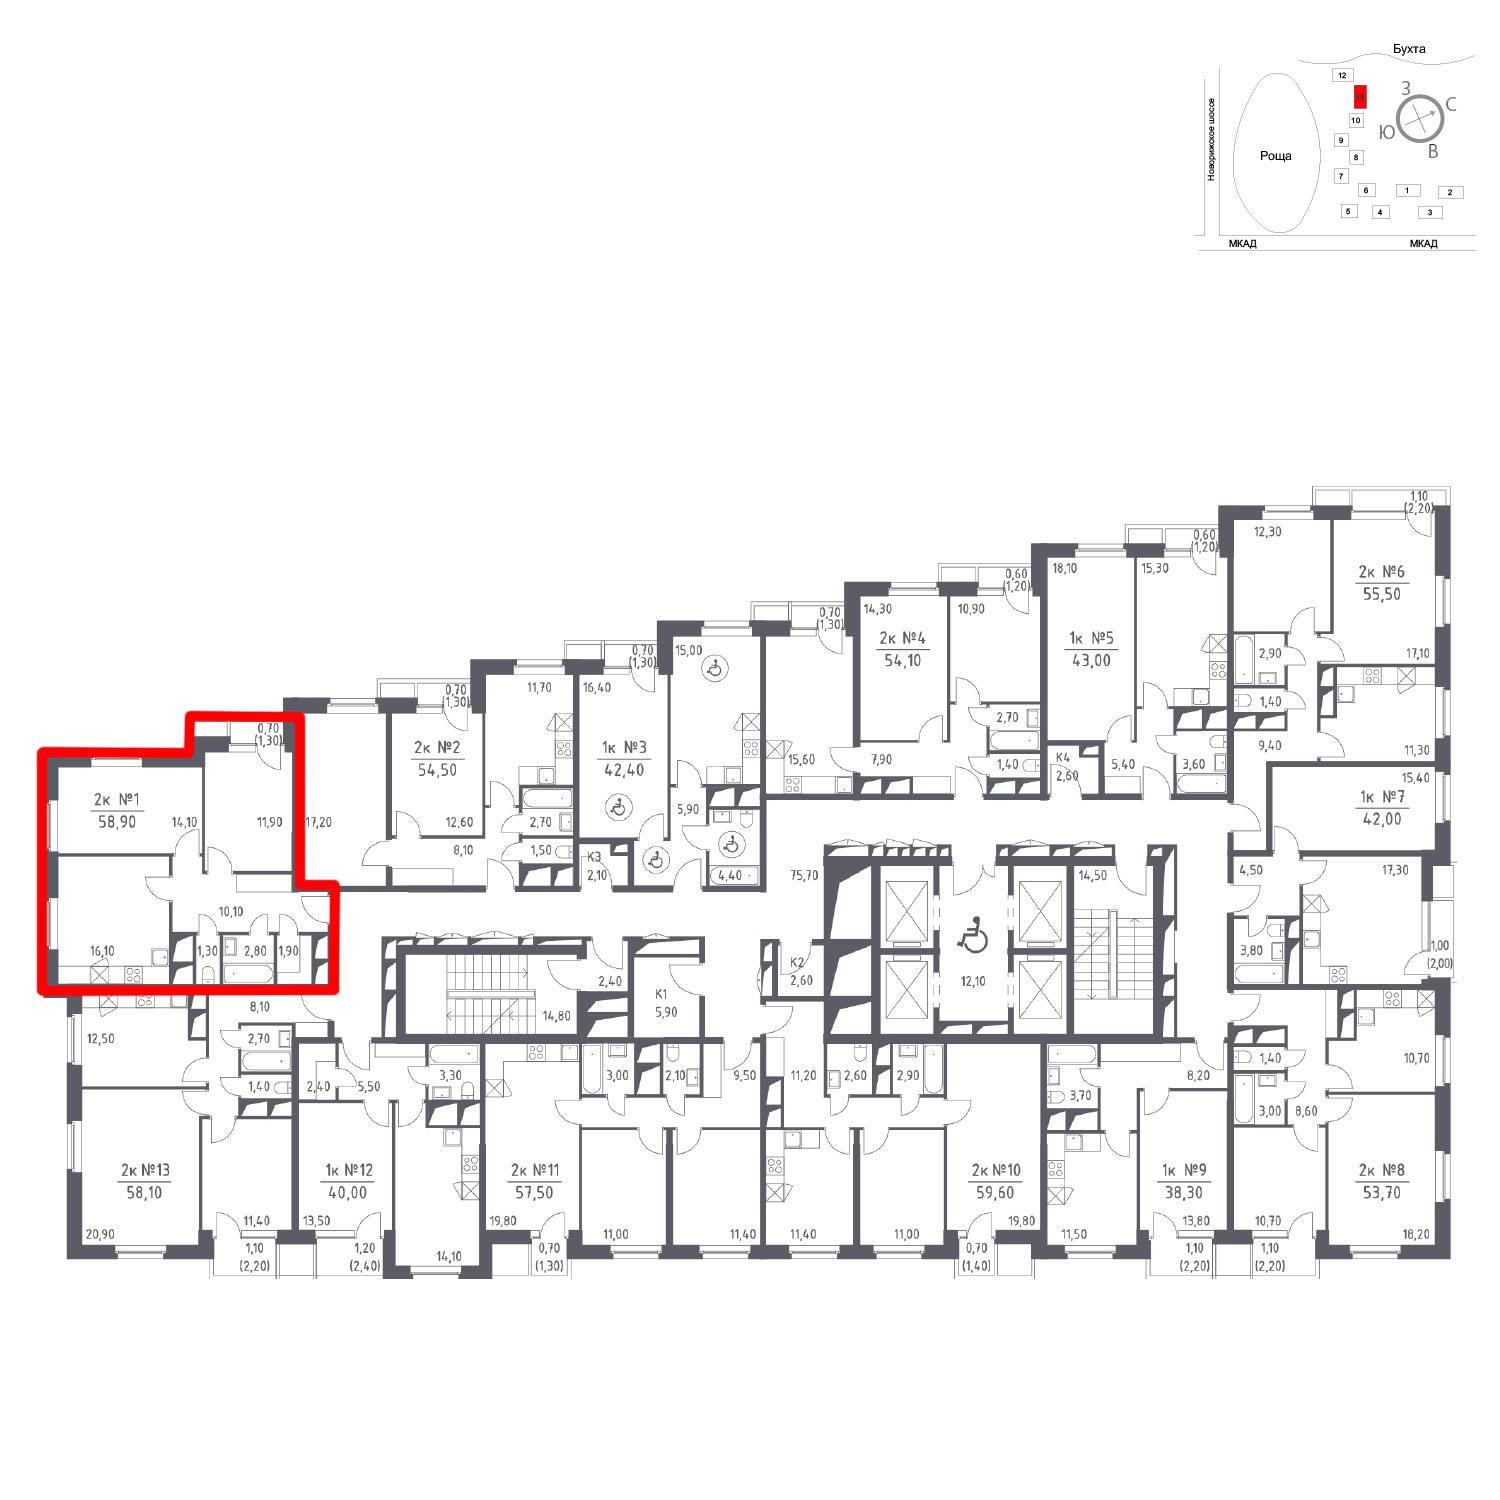 Продаётся 2-комнатная квартира в новостройке 58.9 кв.м. этаж 20/33 за 0 руб 